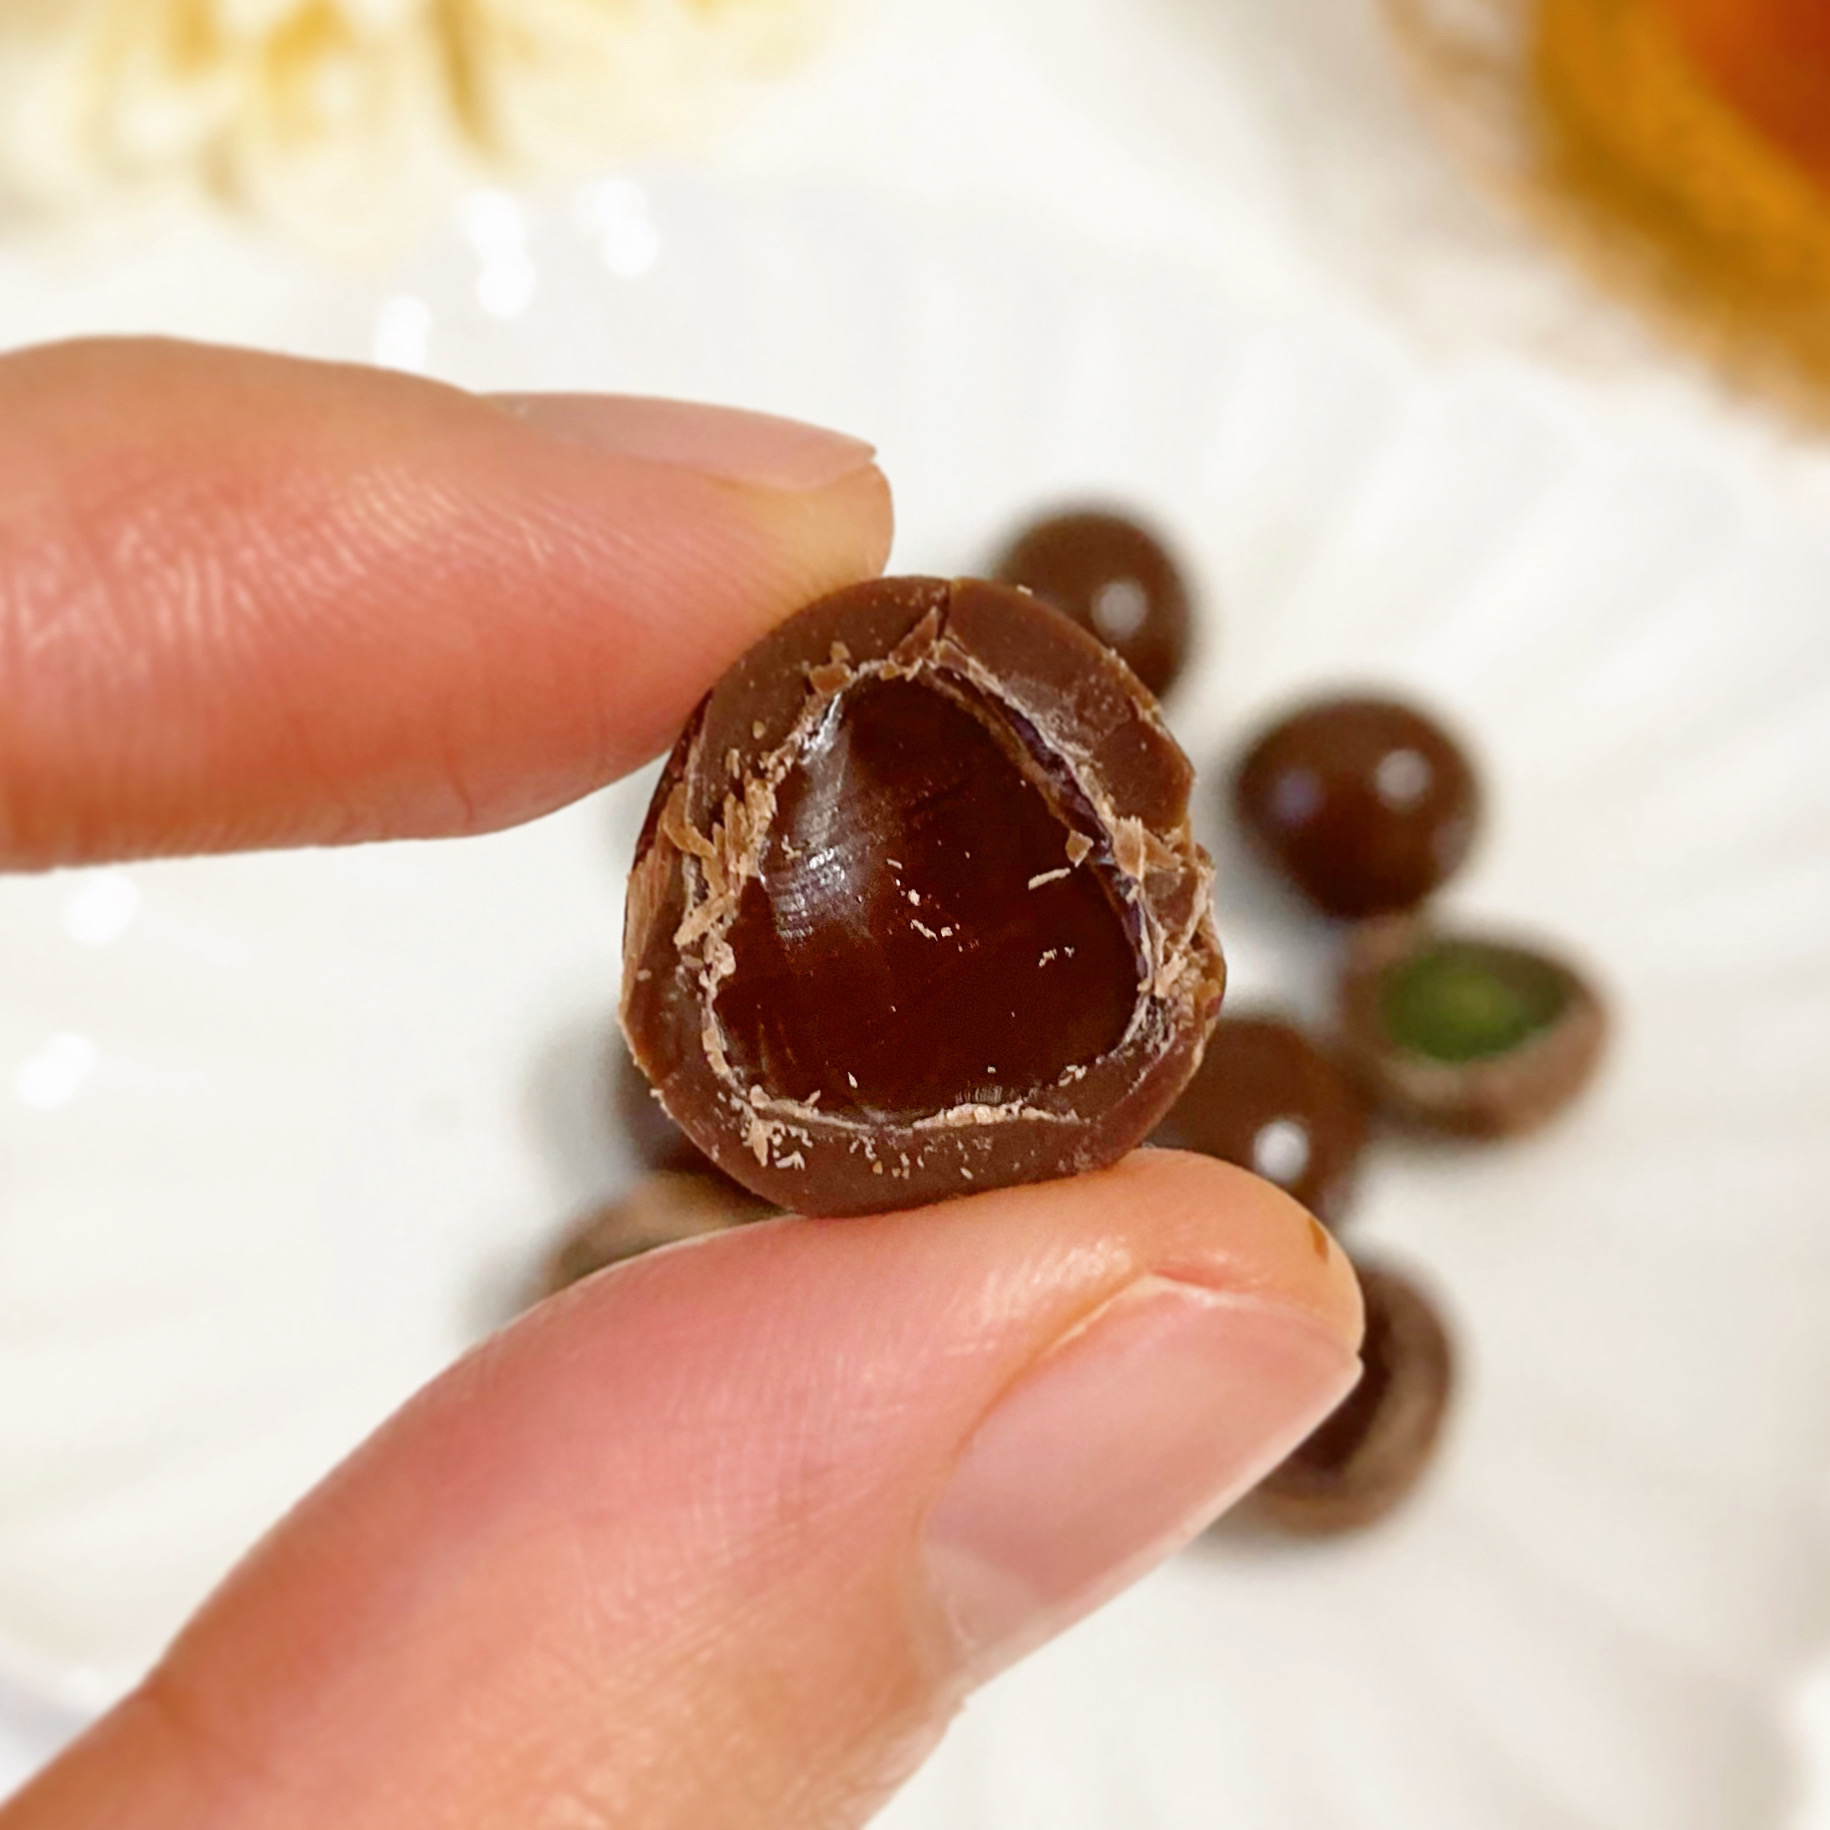 DAISO（ダイソー）のおすすめチョコ「グミinチョコ いちごグミ＆ミルクチョコレート」